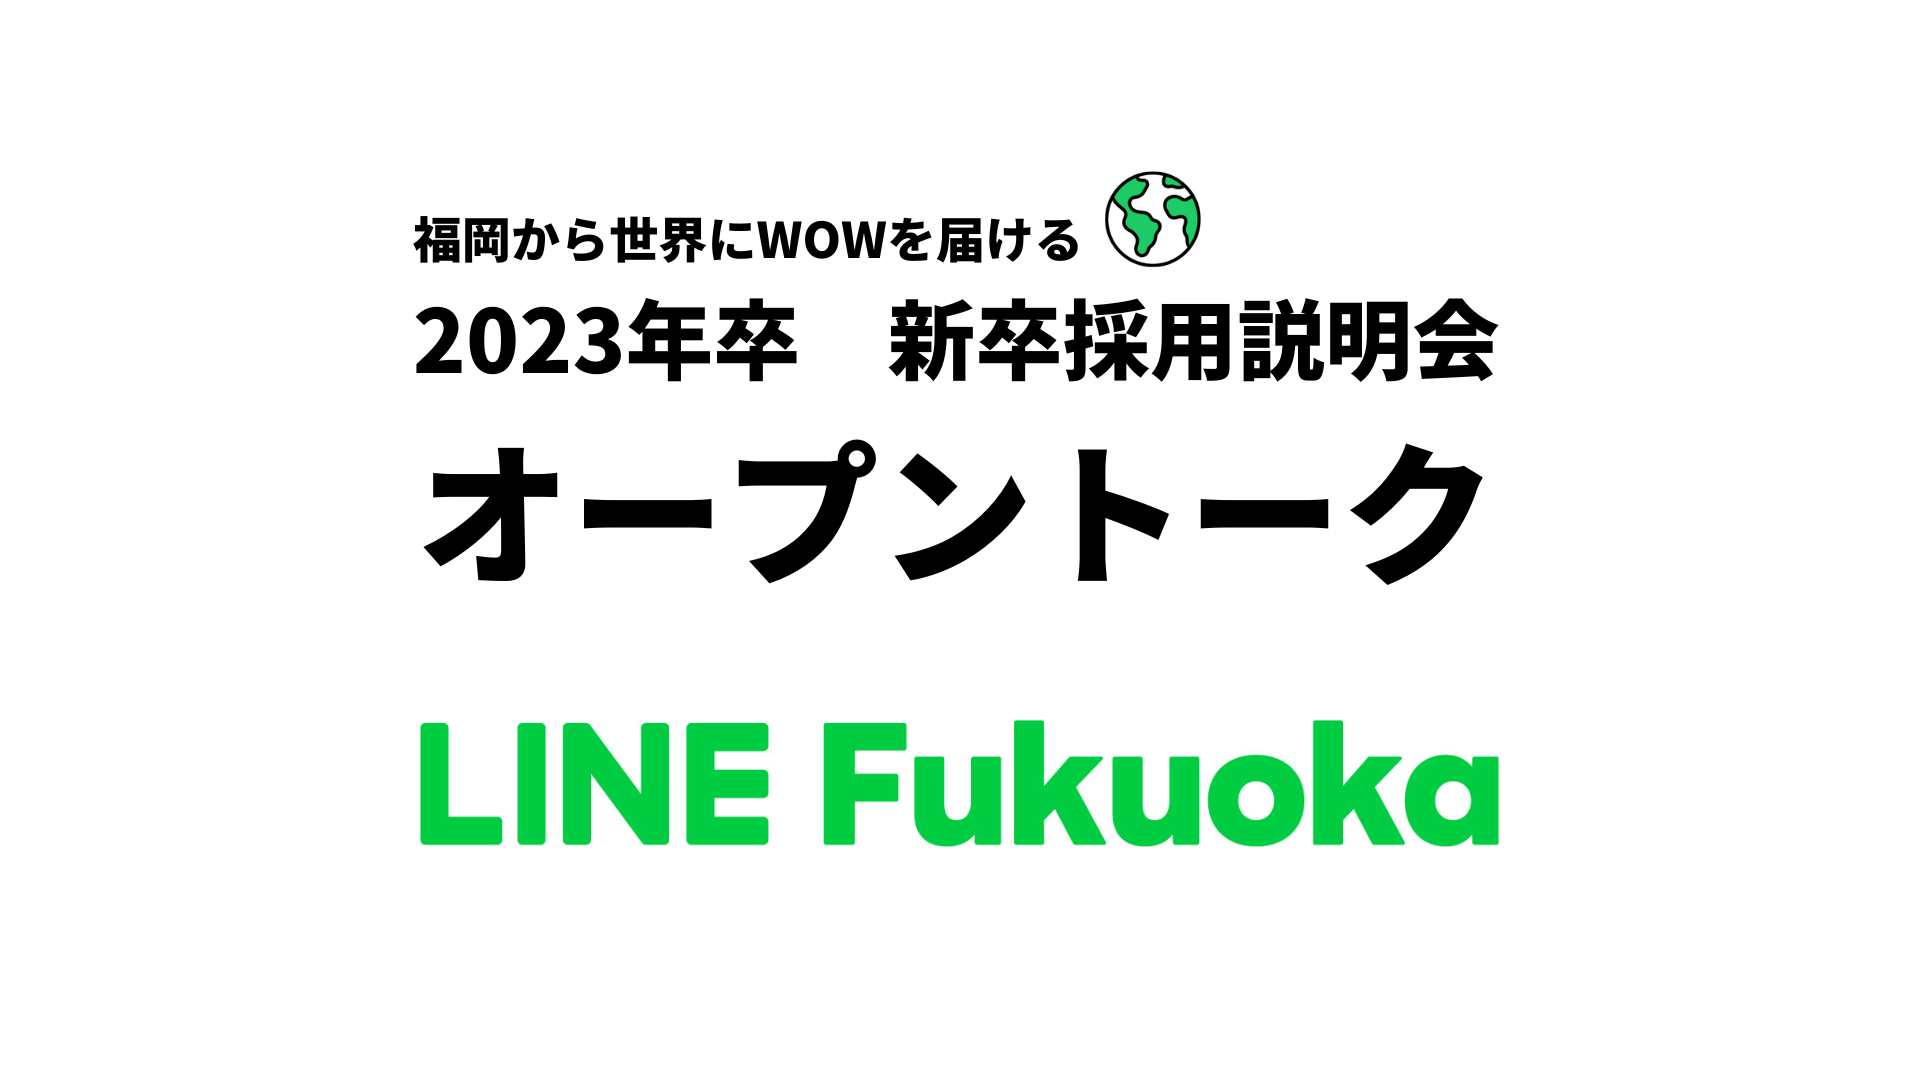 2023年卒 新卒採用説明会「LINE Fukuoka オープントーク」開催します＆事前に読んでいただきたいコンテンツまとめました サムネイル画像